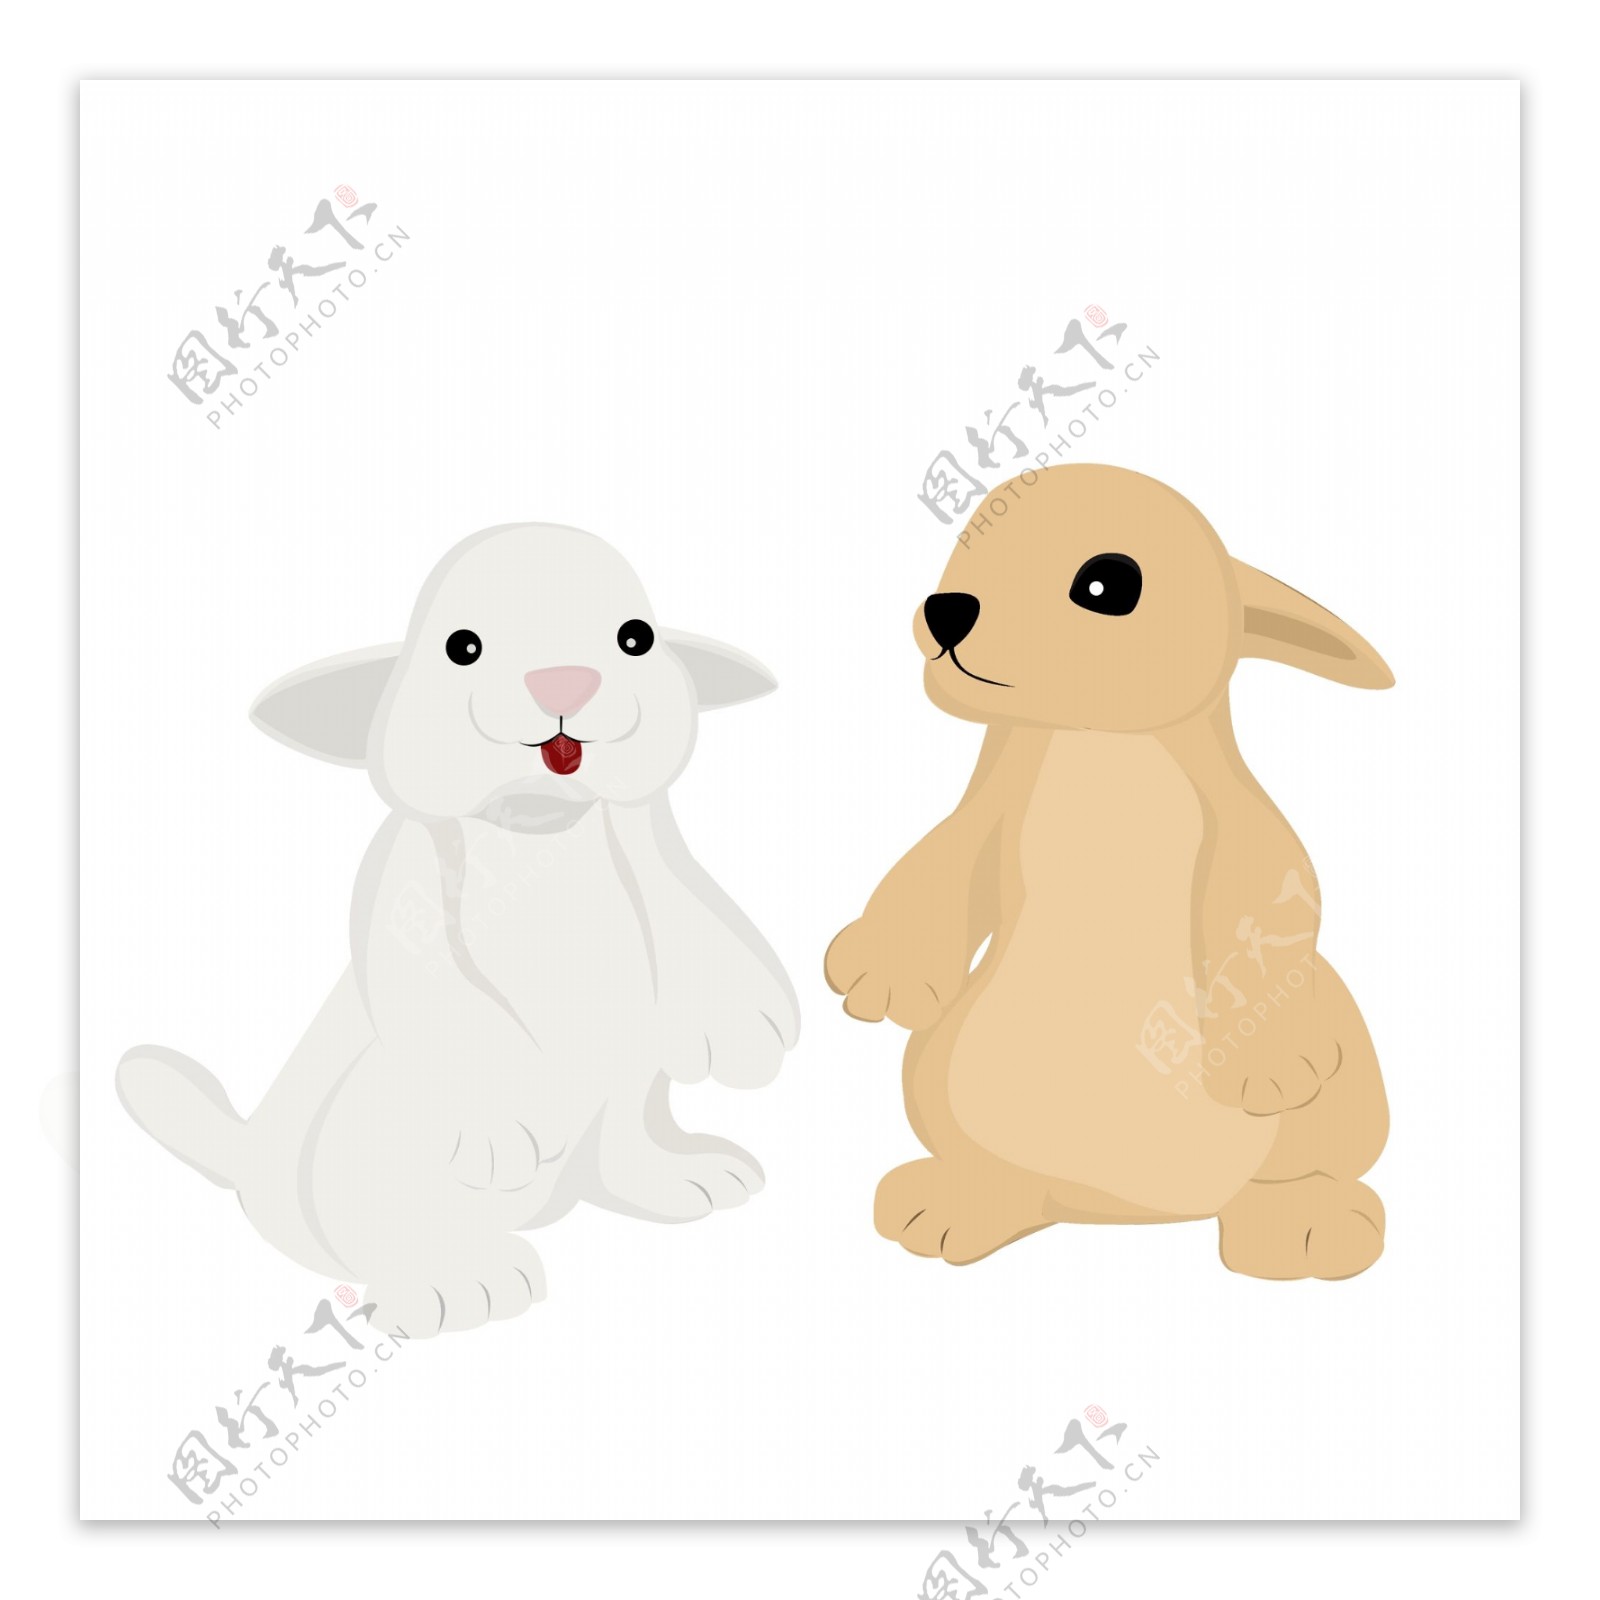 呆萌可爱两只小兔子设计可商用元素